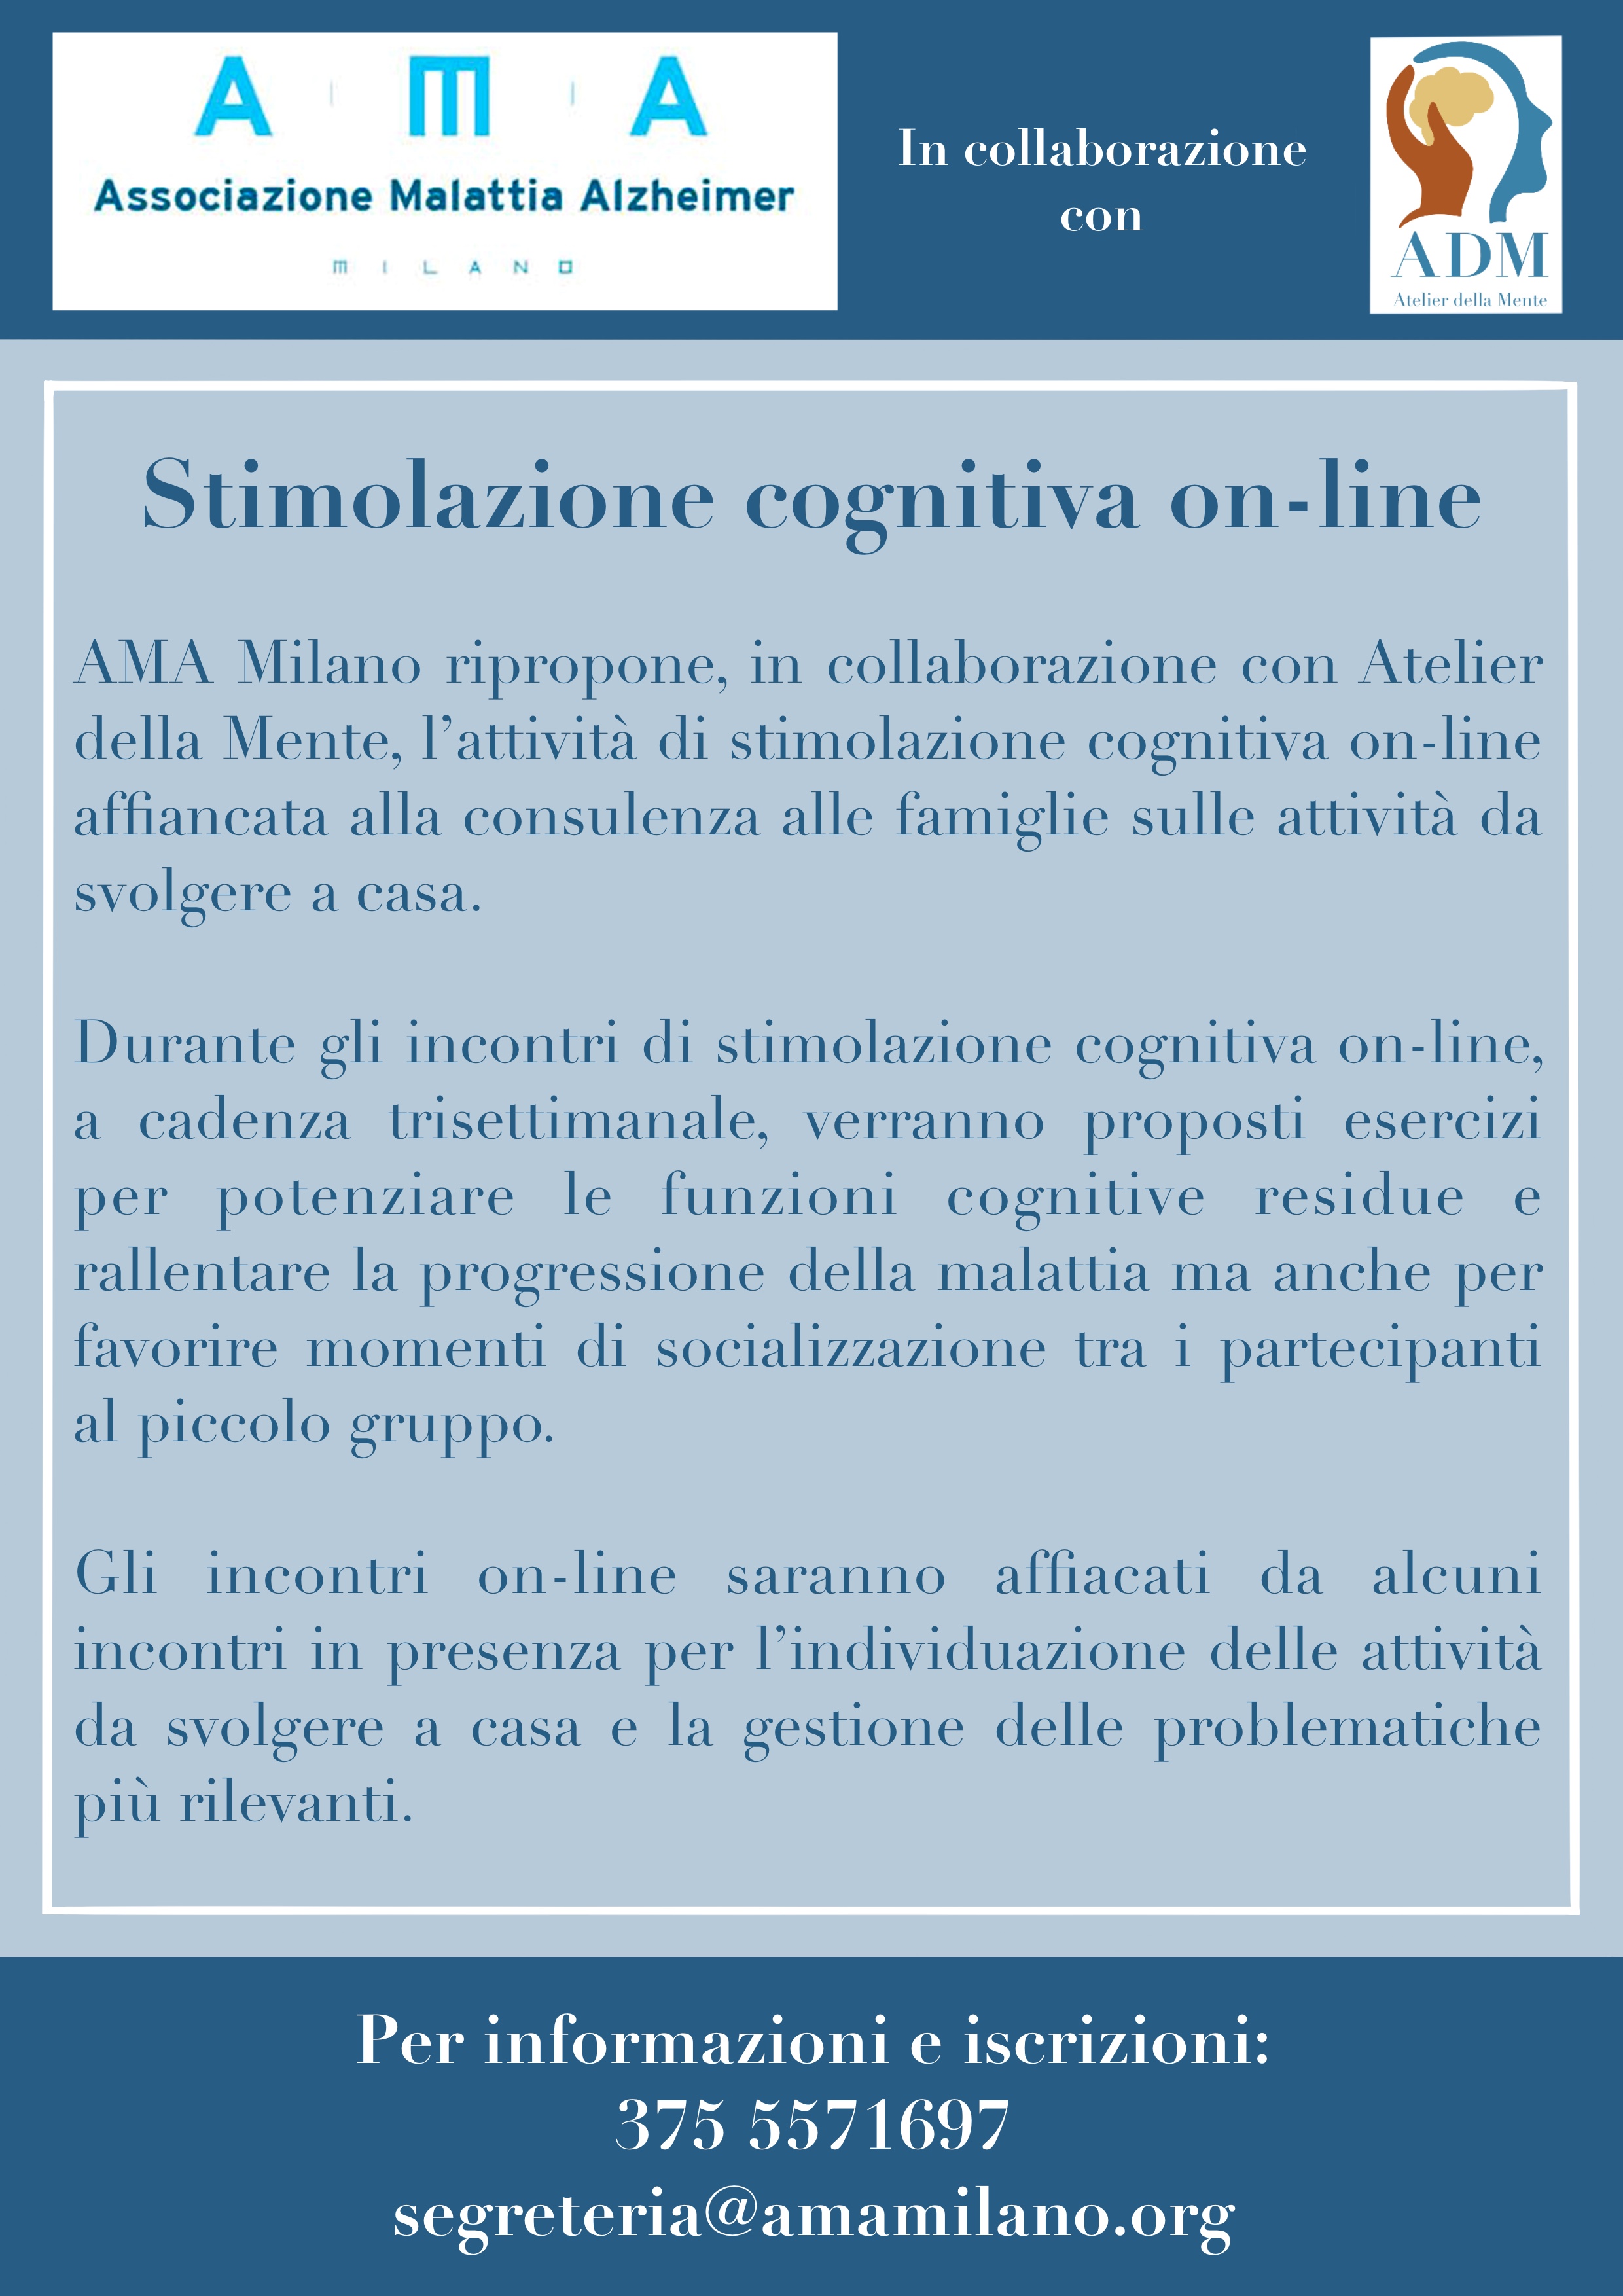 A.M.A. Milano - NEWSLETTER 10 2021 A.M.A. E LA STIMOLAZIONE COGNITIVA